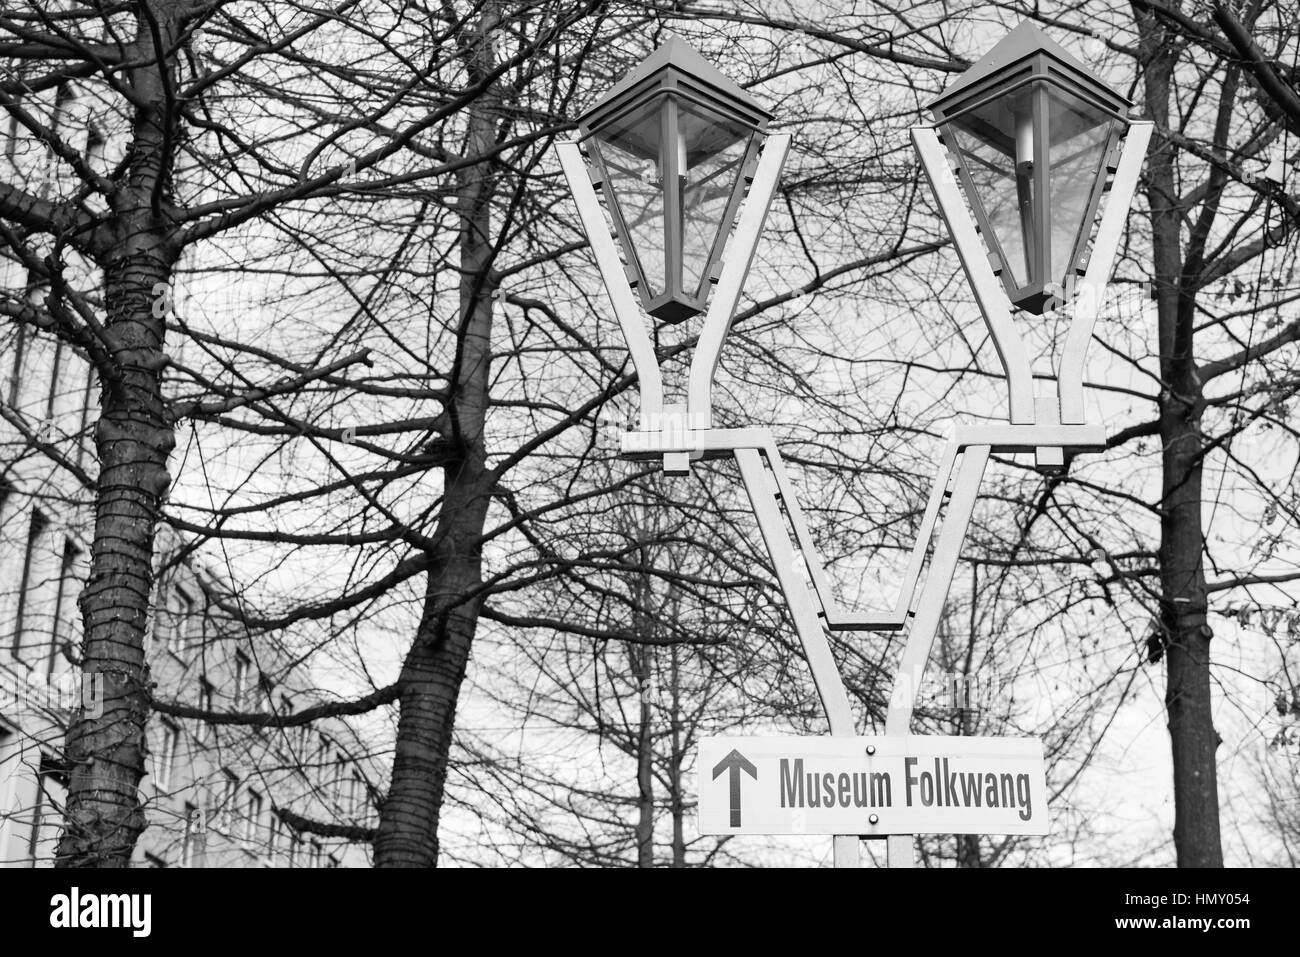 ESSEN, Germania - 25 gennaio 2017: un segno guide le persone interessate verso il famoso Museo Folkwang che è ad una distanza a piedi dal Rüttenscheider Stern Foto Stock